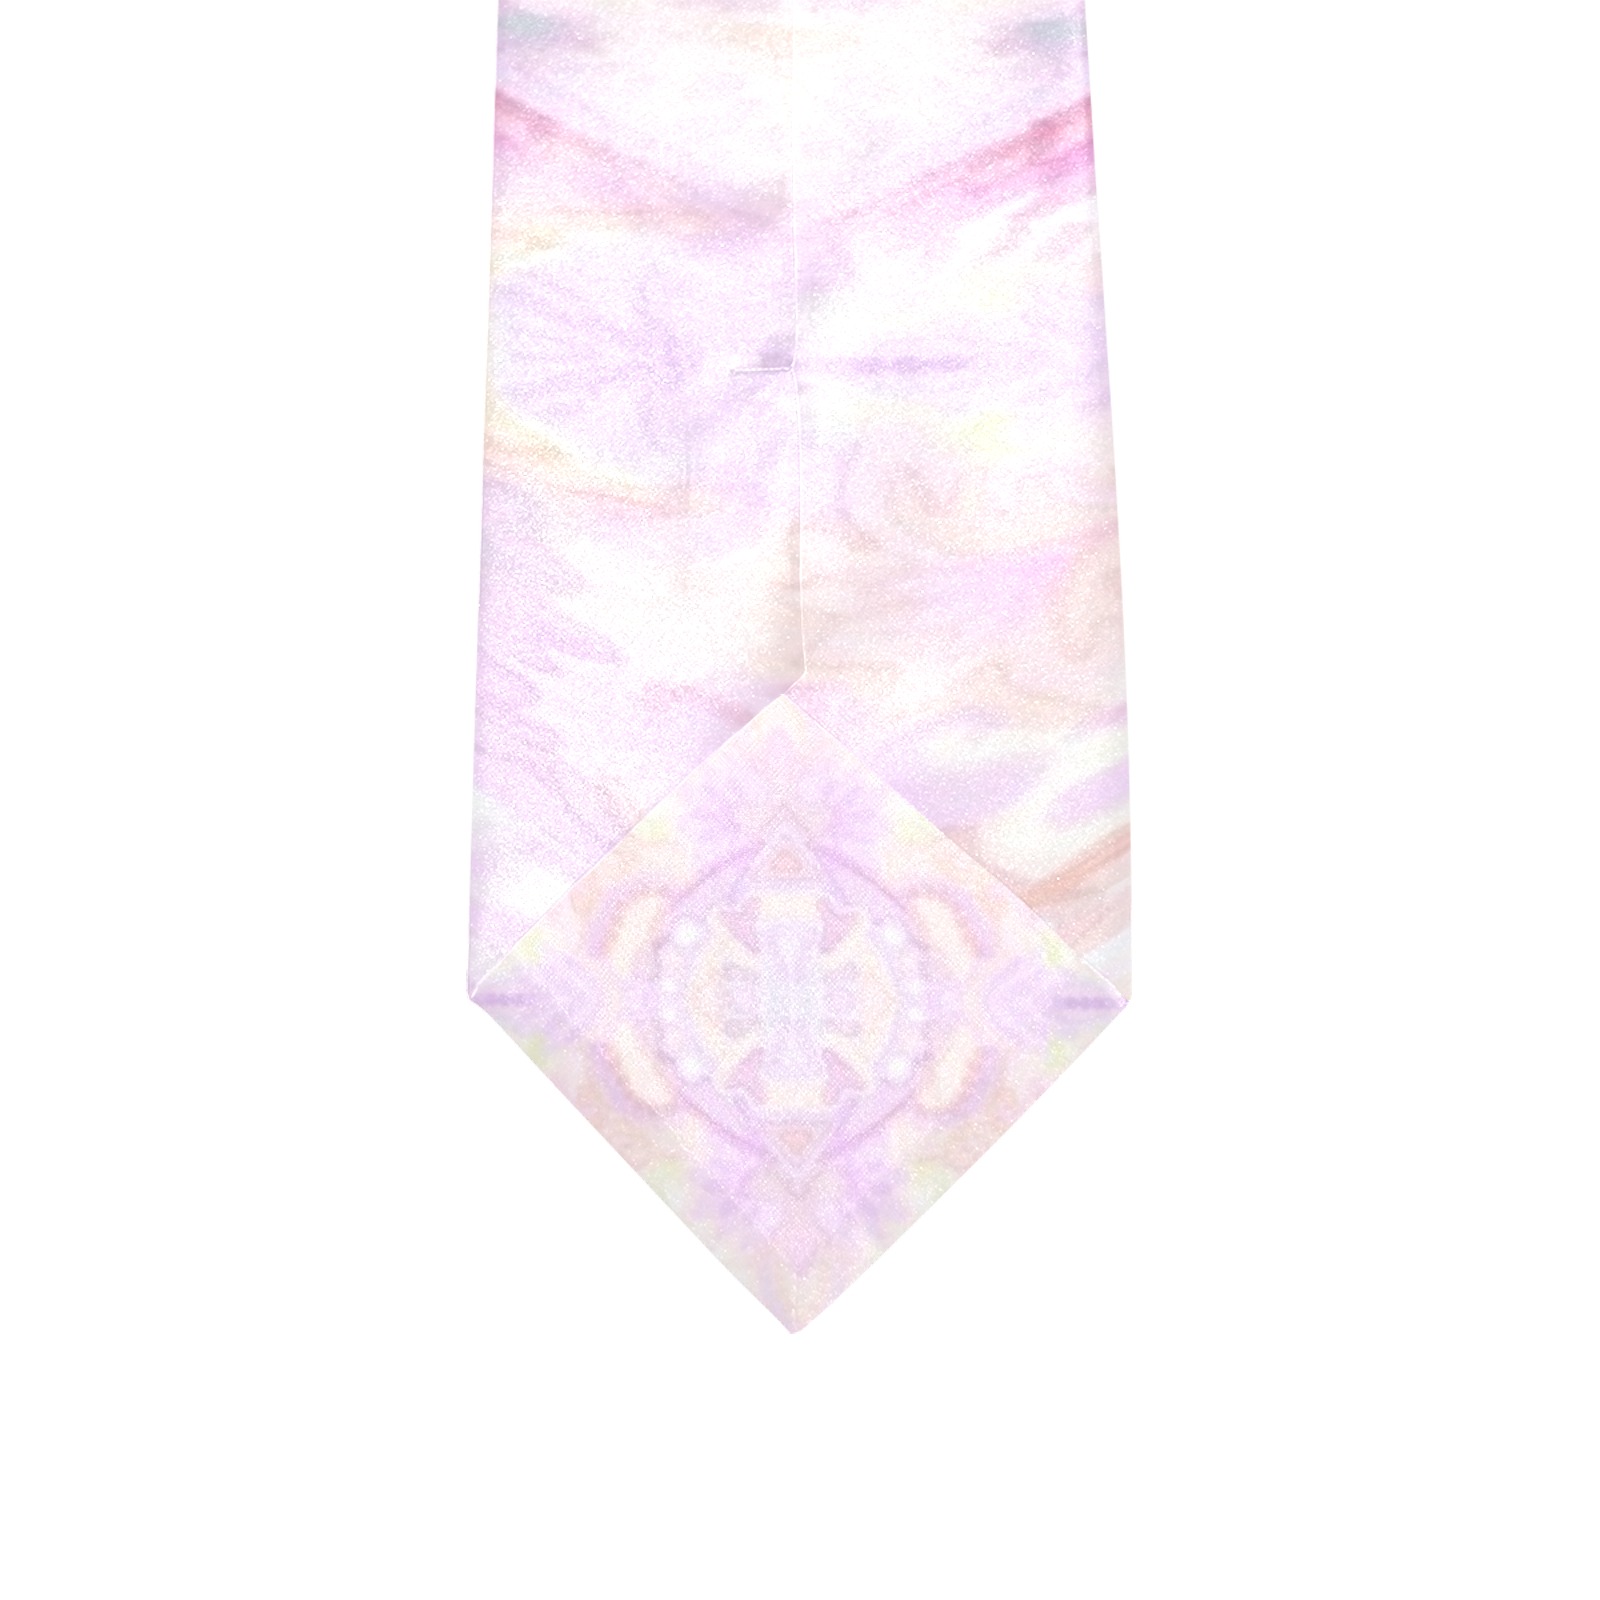 reveil baby pink Custom Peekaboo Tie with Hidden Picture